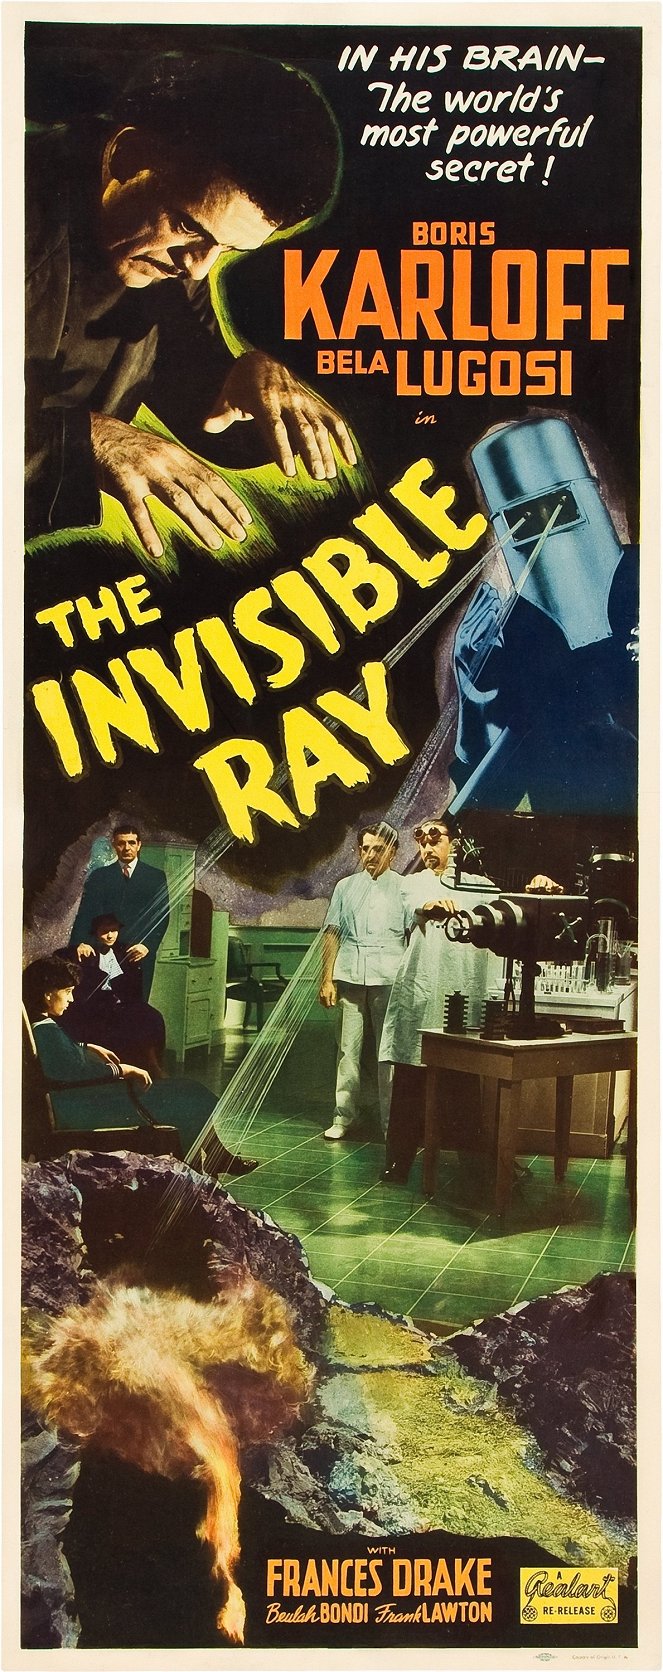 The Invisible Ray - Plakaty